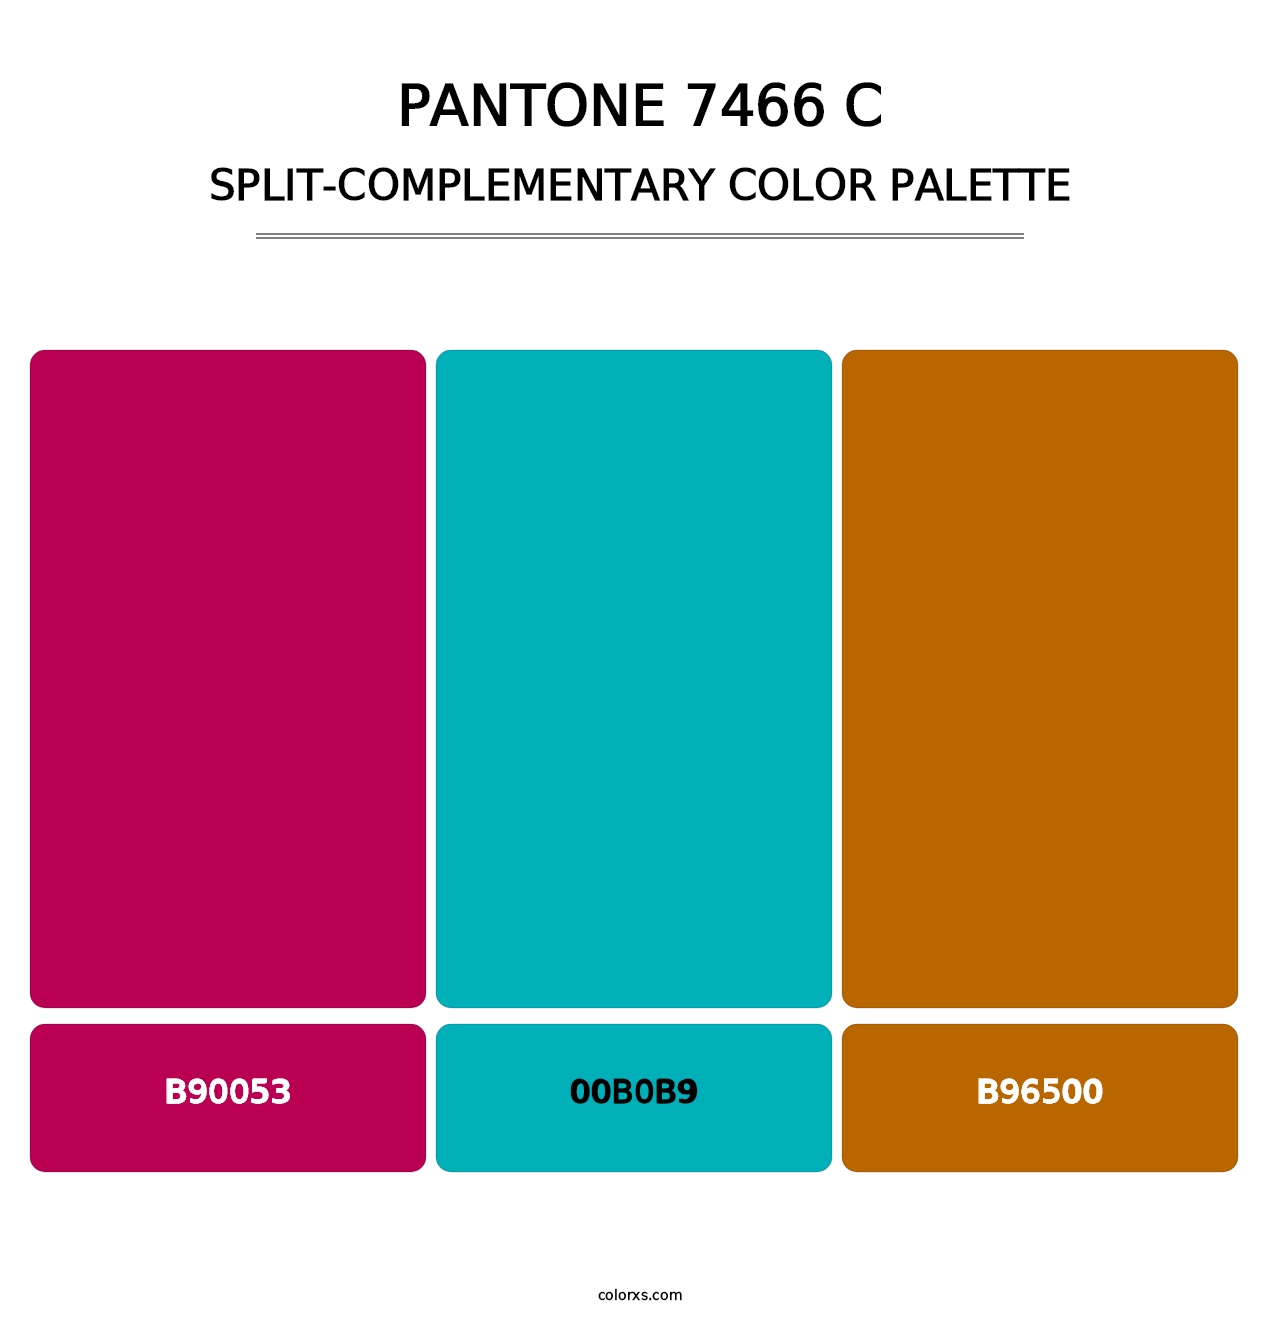 PANTONE 7466 C - Split-Complementary Color Palette